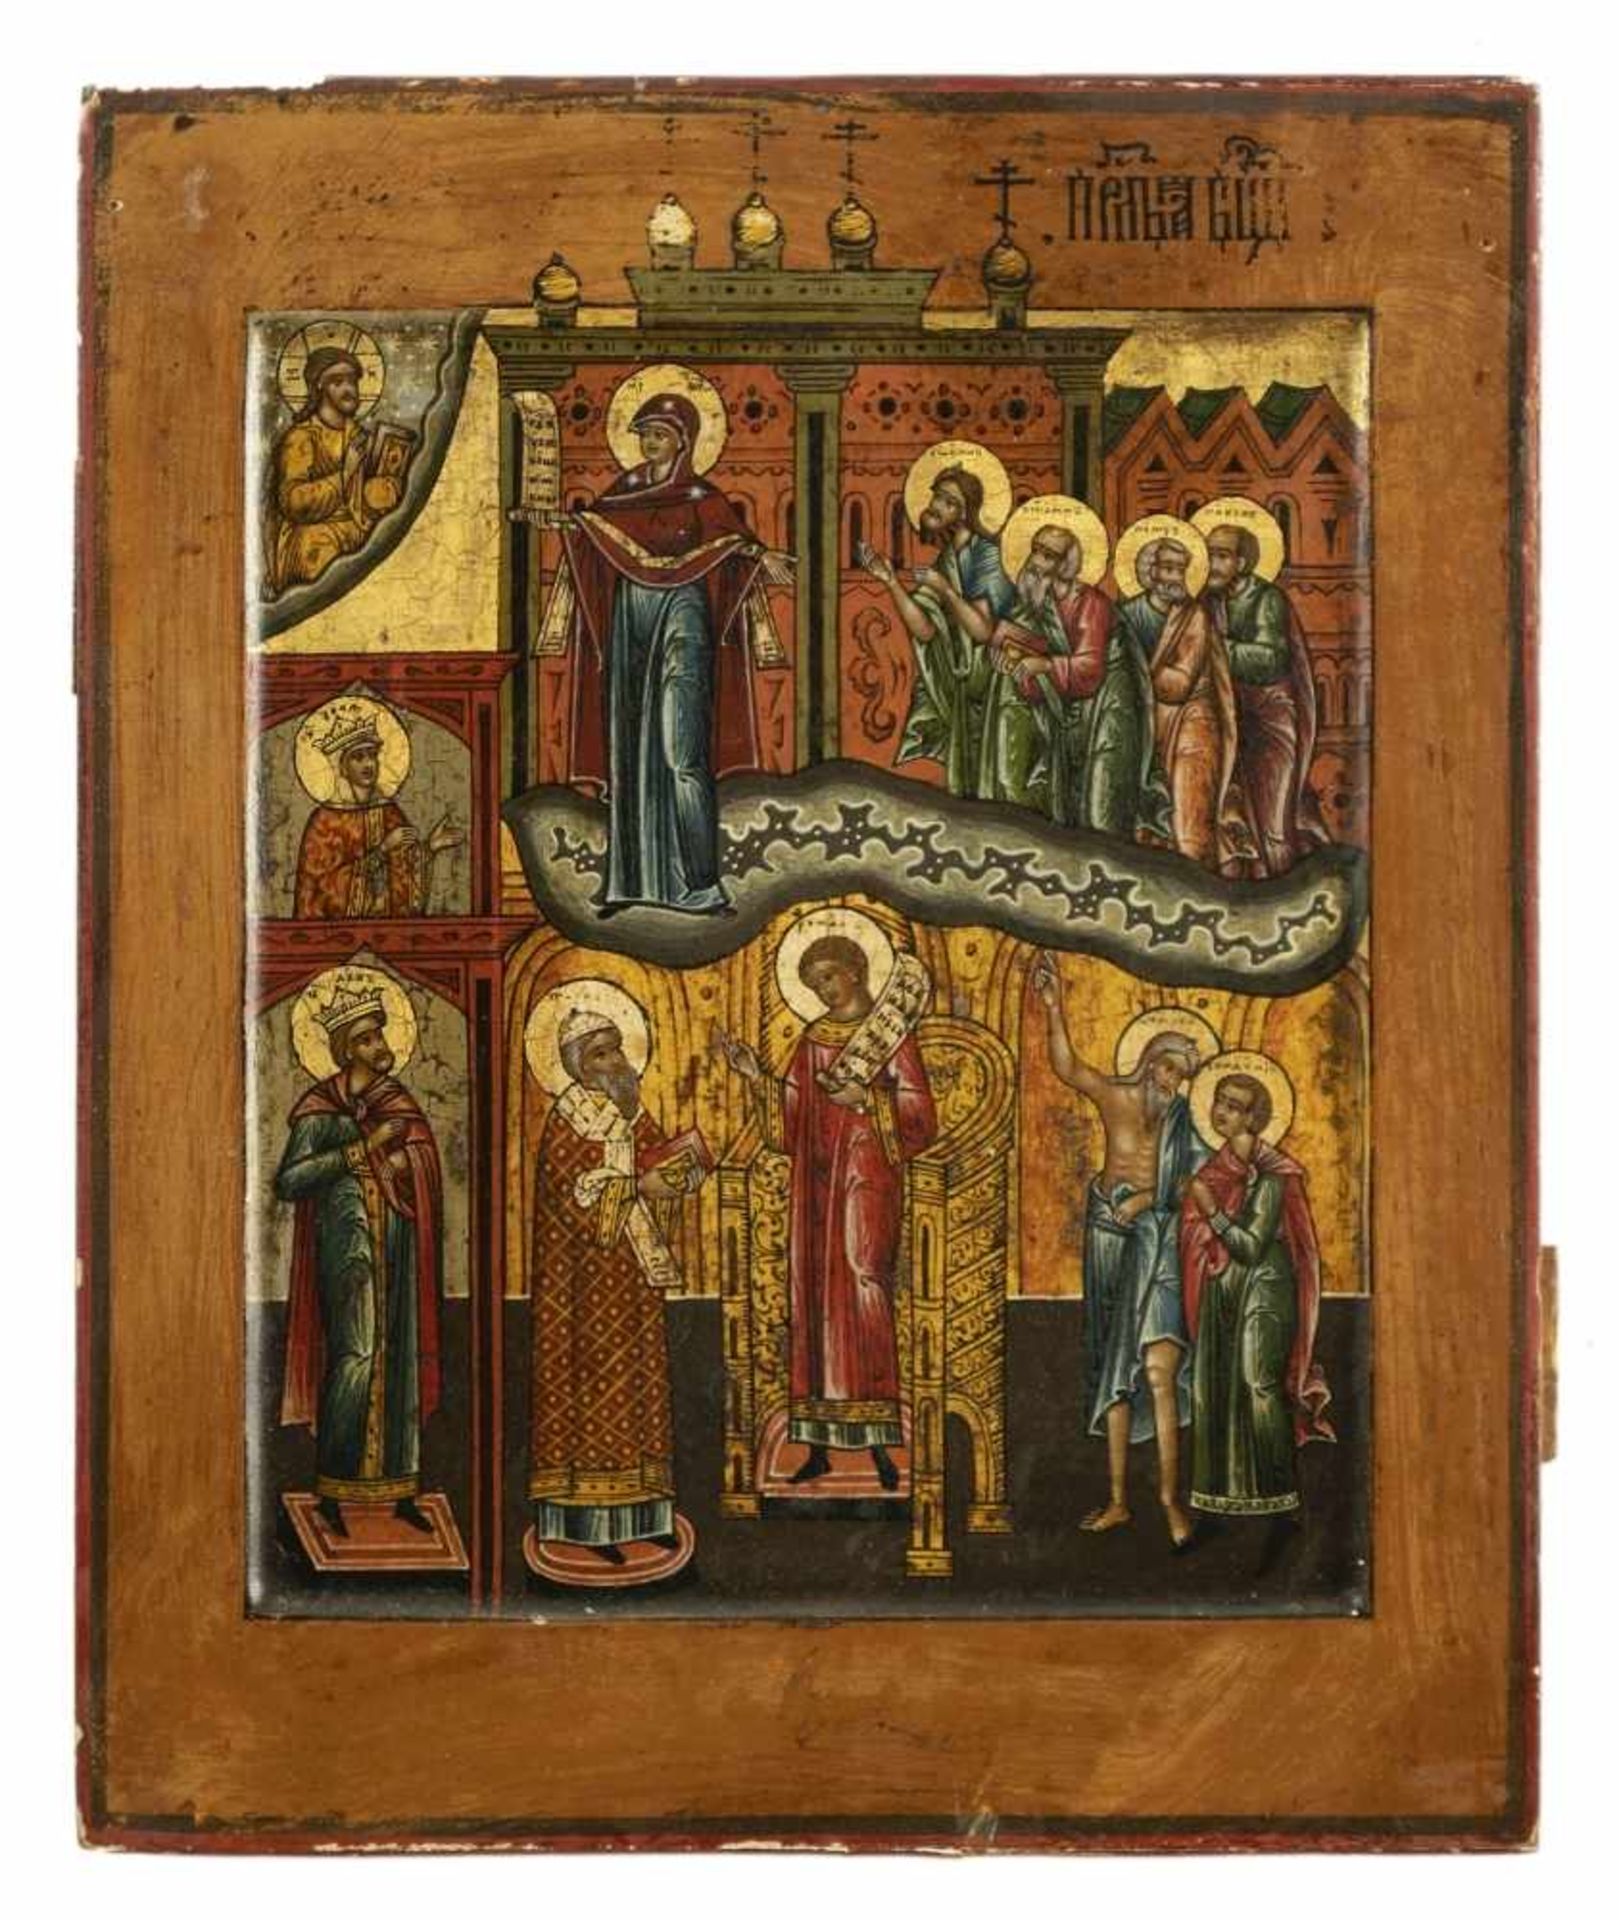 Gottesmutter PokrovRussische Ikone, Tempera / Holz, 19. Jh.27 x 22 cmIn der oberen Bildhälfte ist